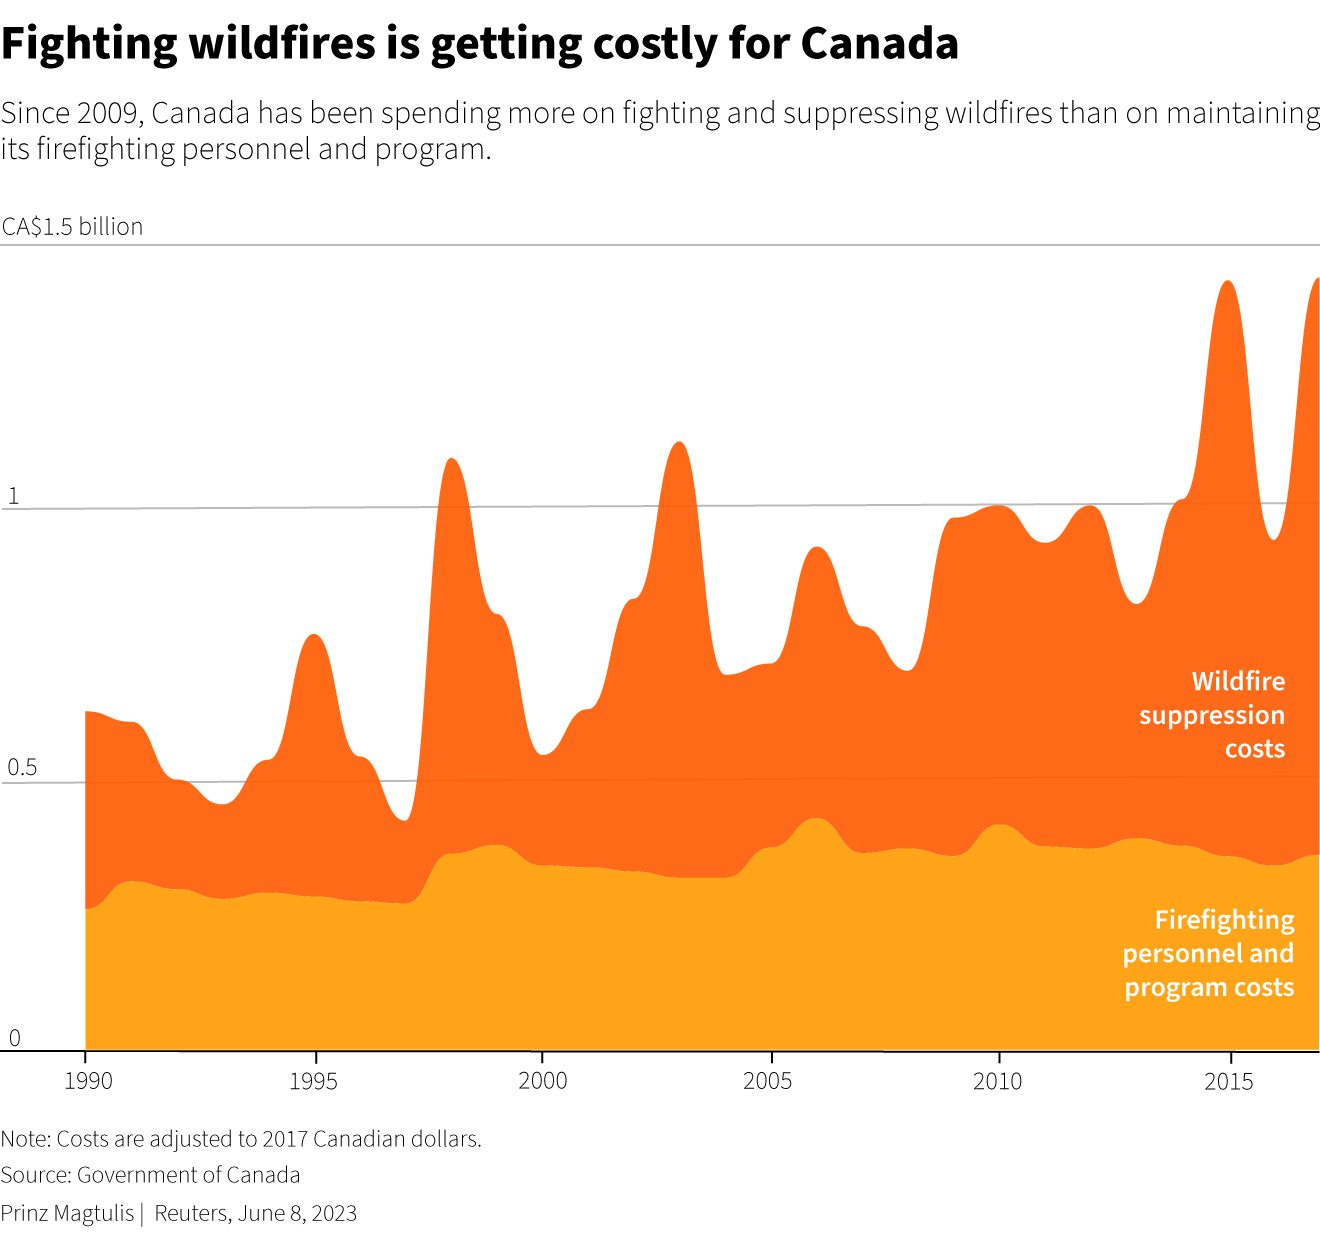 Desde 2009, Canadá ha gastado más en combatir y extinguir incendios forestales que en mantener al personal de extinción de incendios y su programa.